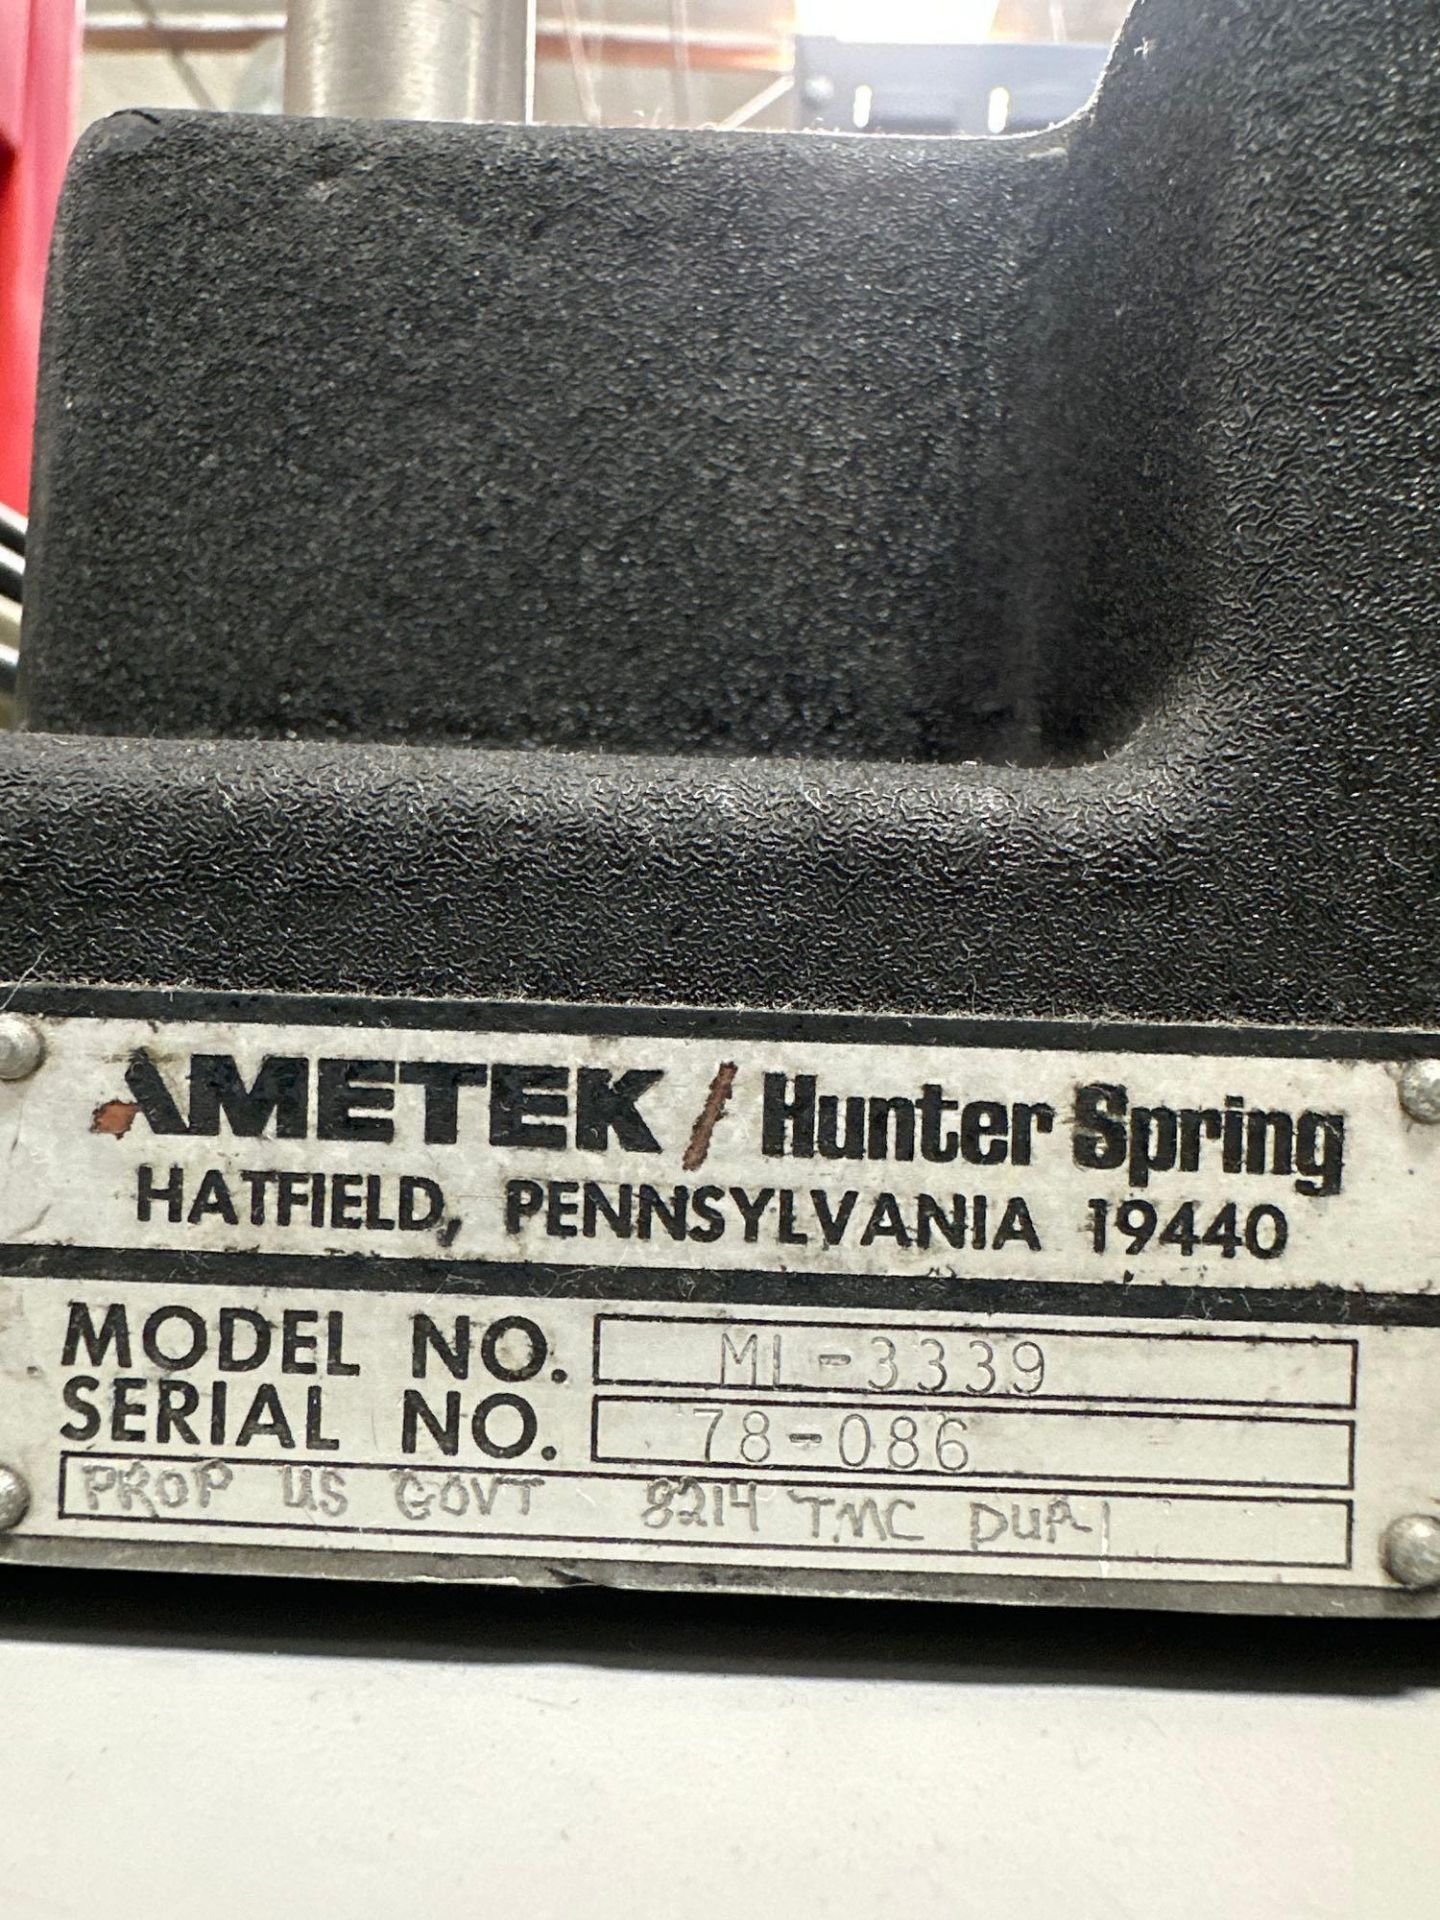 Ametek ML-3339 Tensile Tester, s/n 78-086 - Image 6 of 6